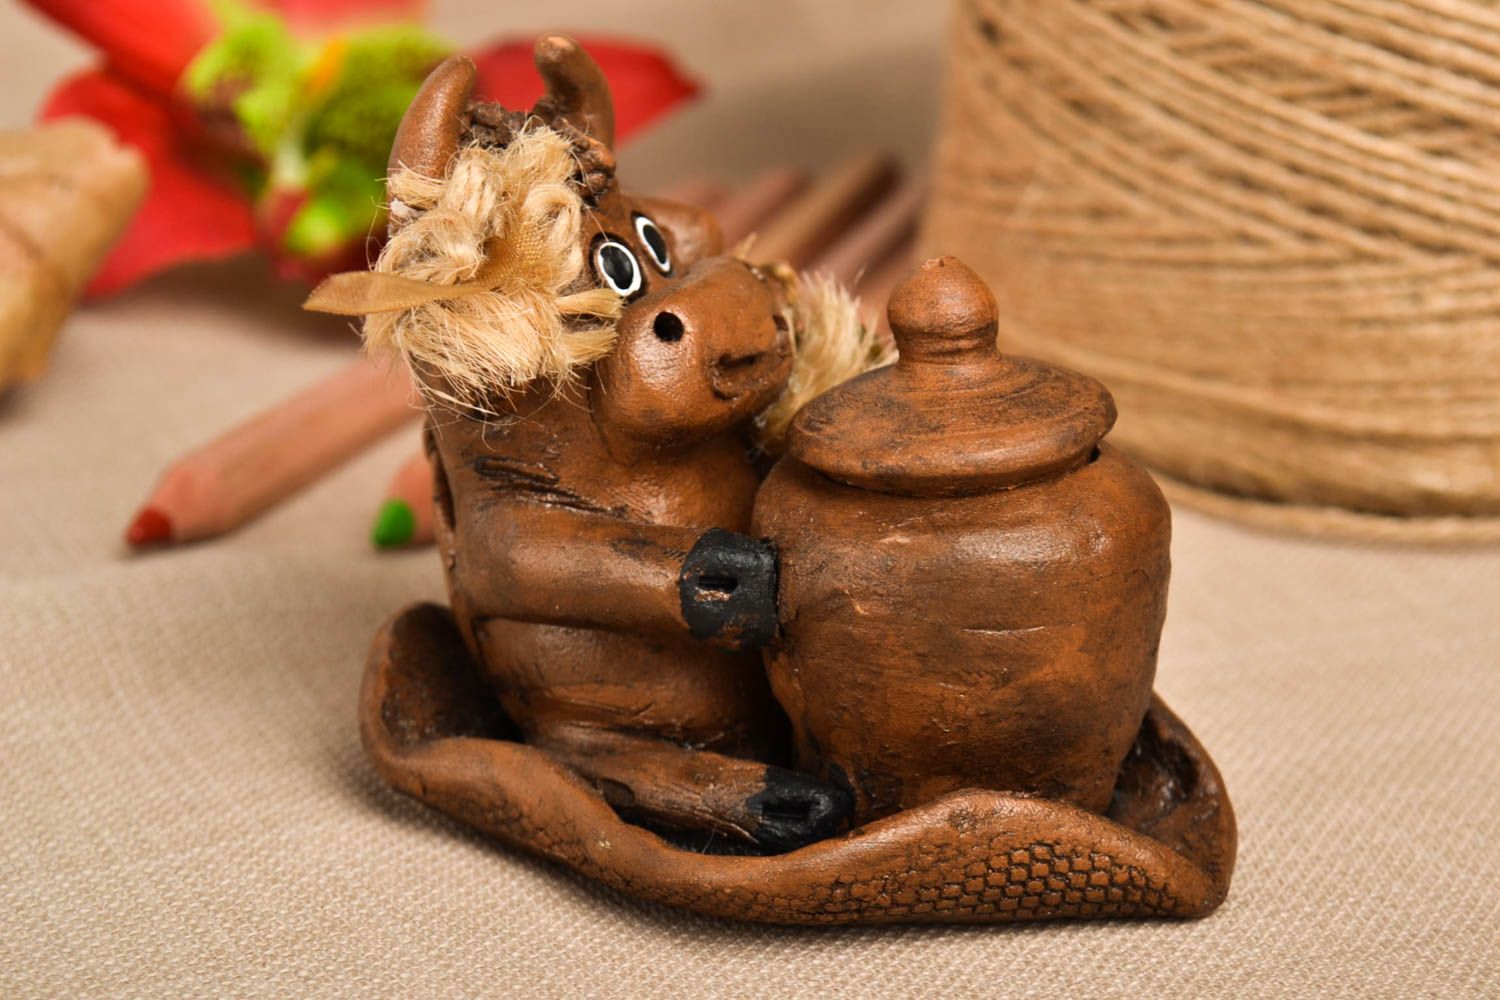 Figurina fatta a mano statuina in ceramica souvenir animaletto in terracotta foto 1